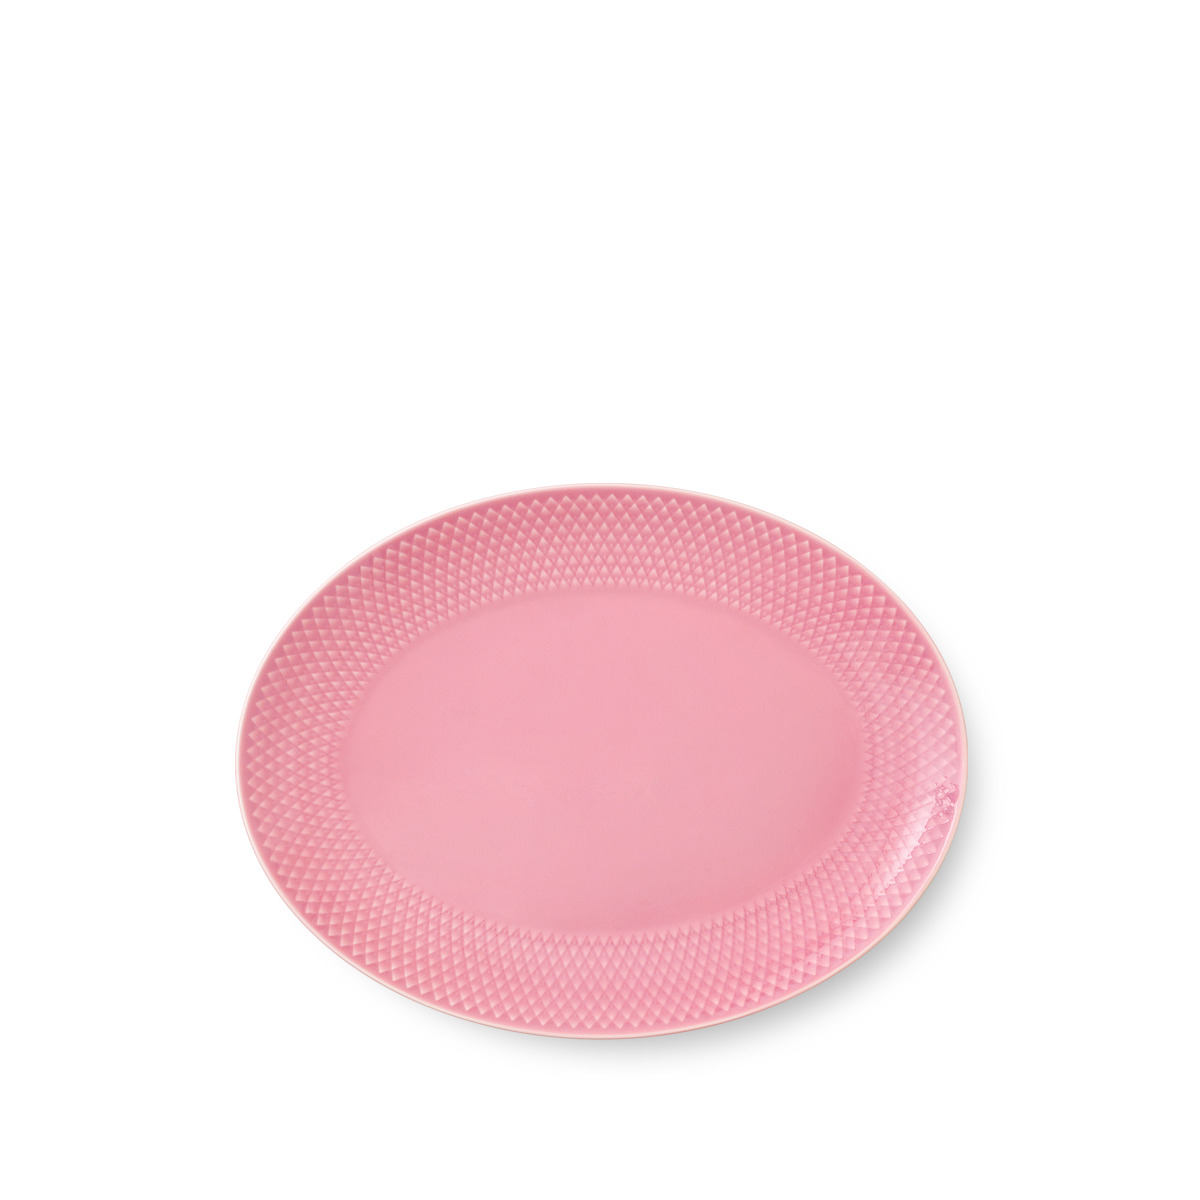 Billede af Lyngby Porcelæn - Rhombe Ovalt serveringsfad 28x21 cm, rosa hos Rikki Tikki Shop